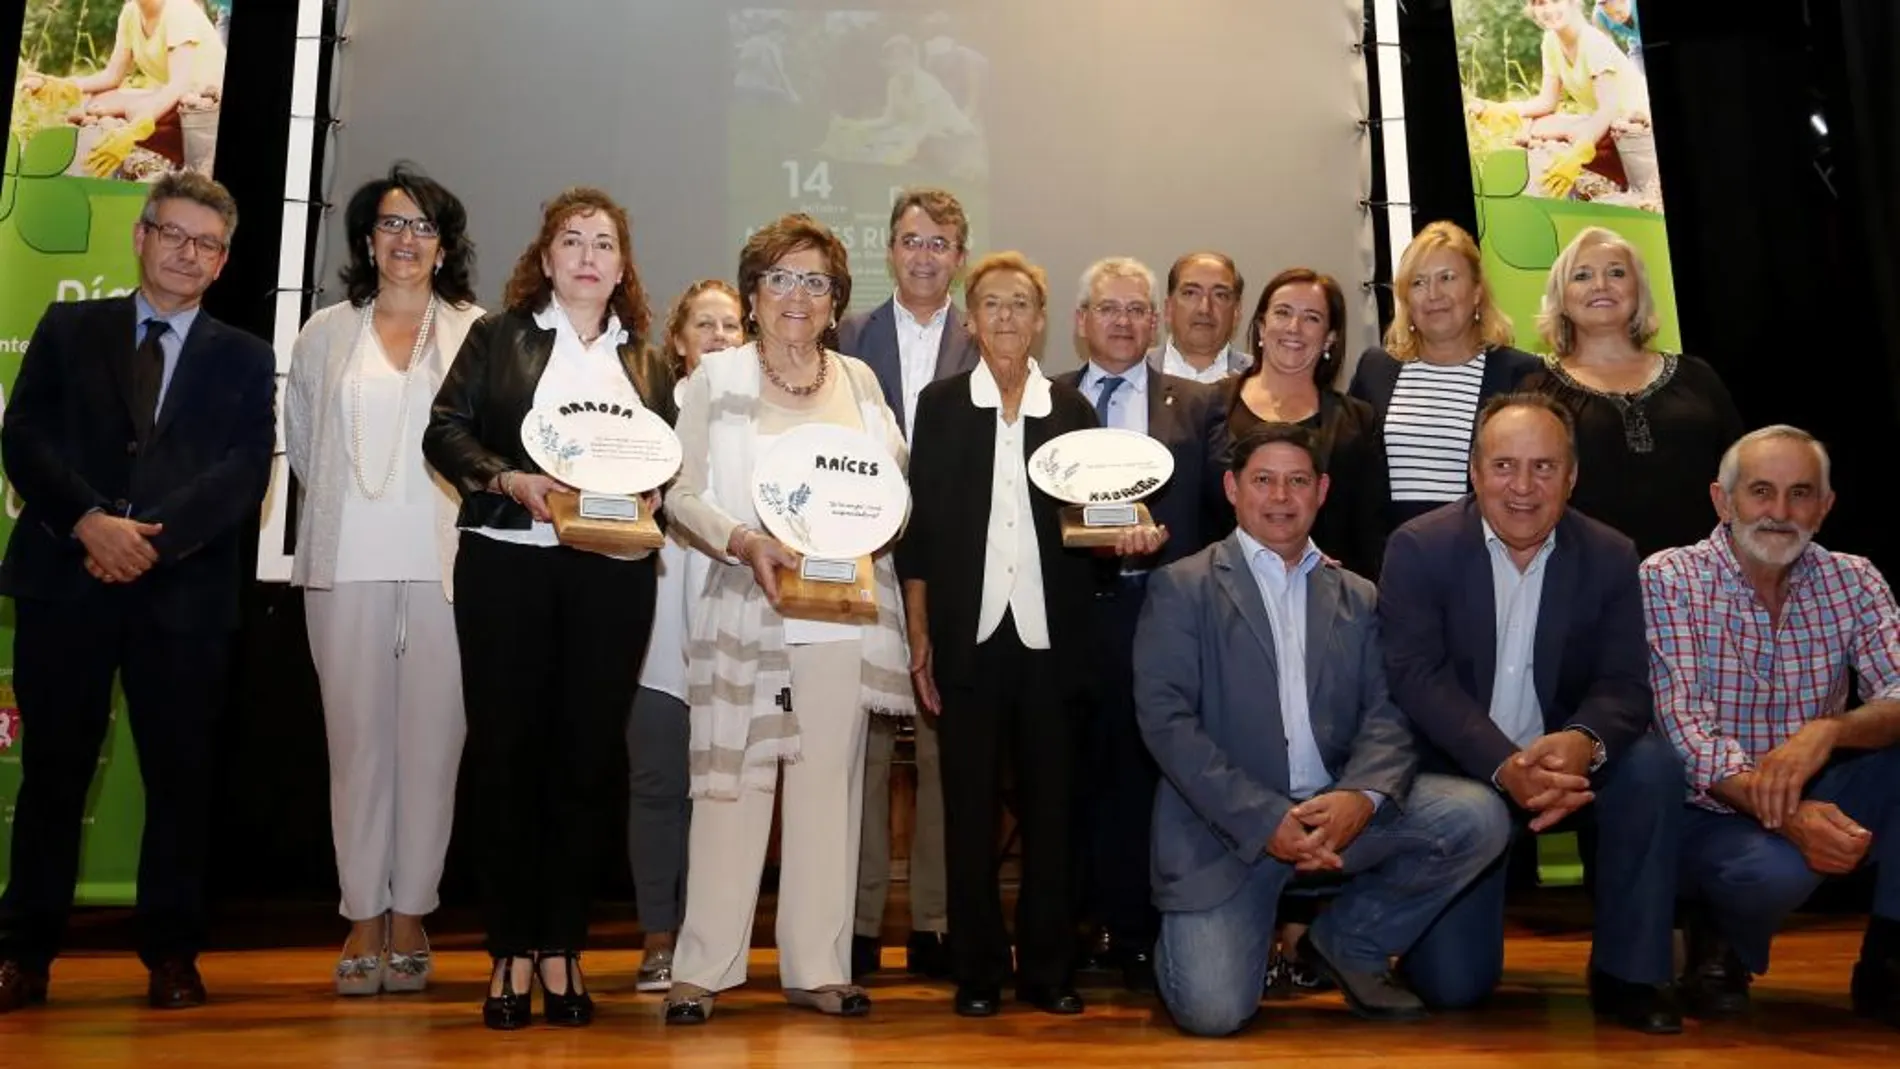 El presidente de la Diputación de León, Juan Martínez Majo, asiste a Gala del Día Internacional de la Mujer Rural celebrada en Valencia de Don Juan (León), en la que se entregan los Premios 'Arroba', 'Raíces' y Madreña'